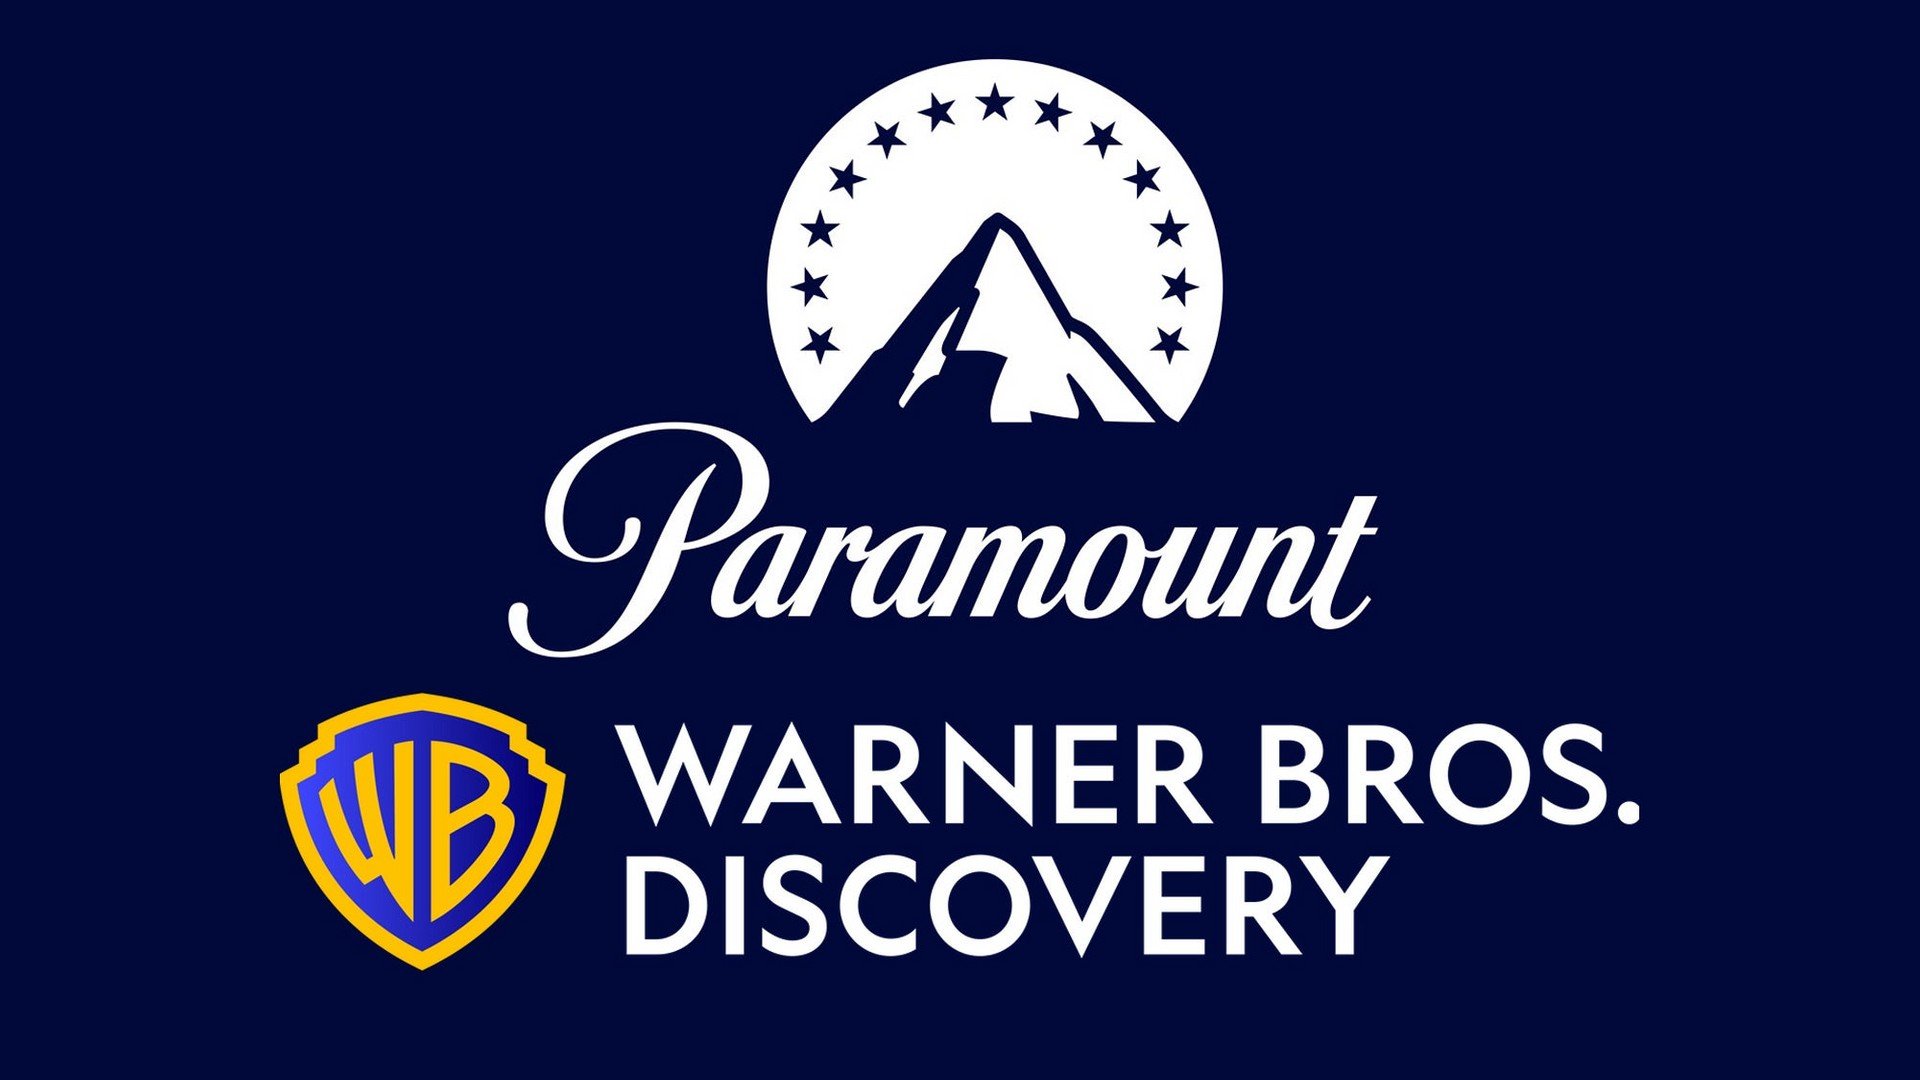 Warner Bros. Discovery e Paramount podem se fundir em uma única empresa 